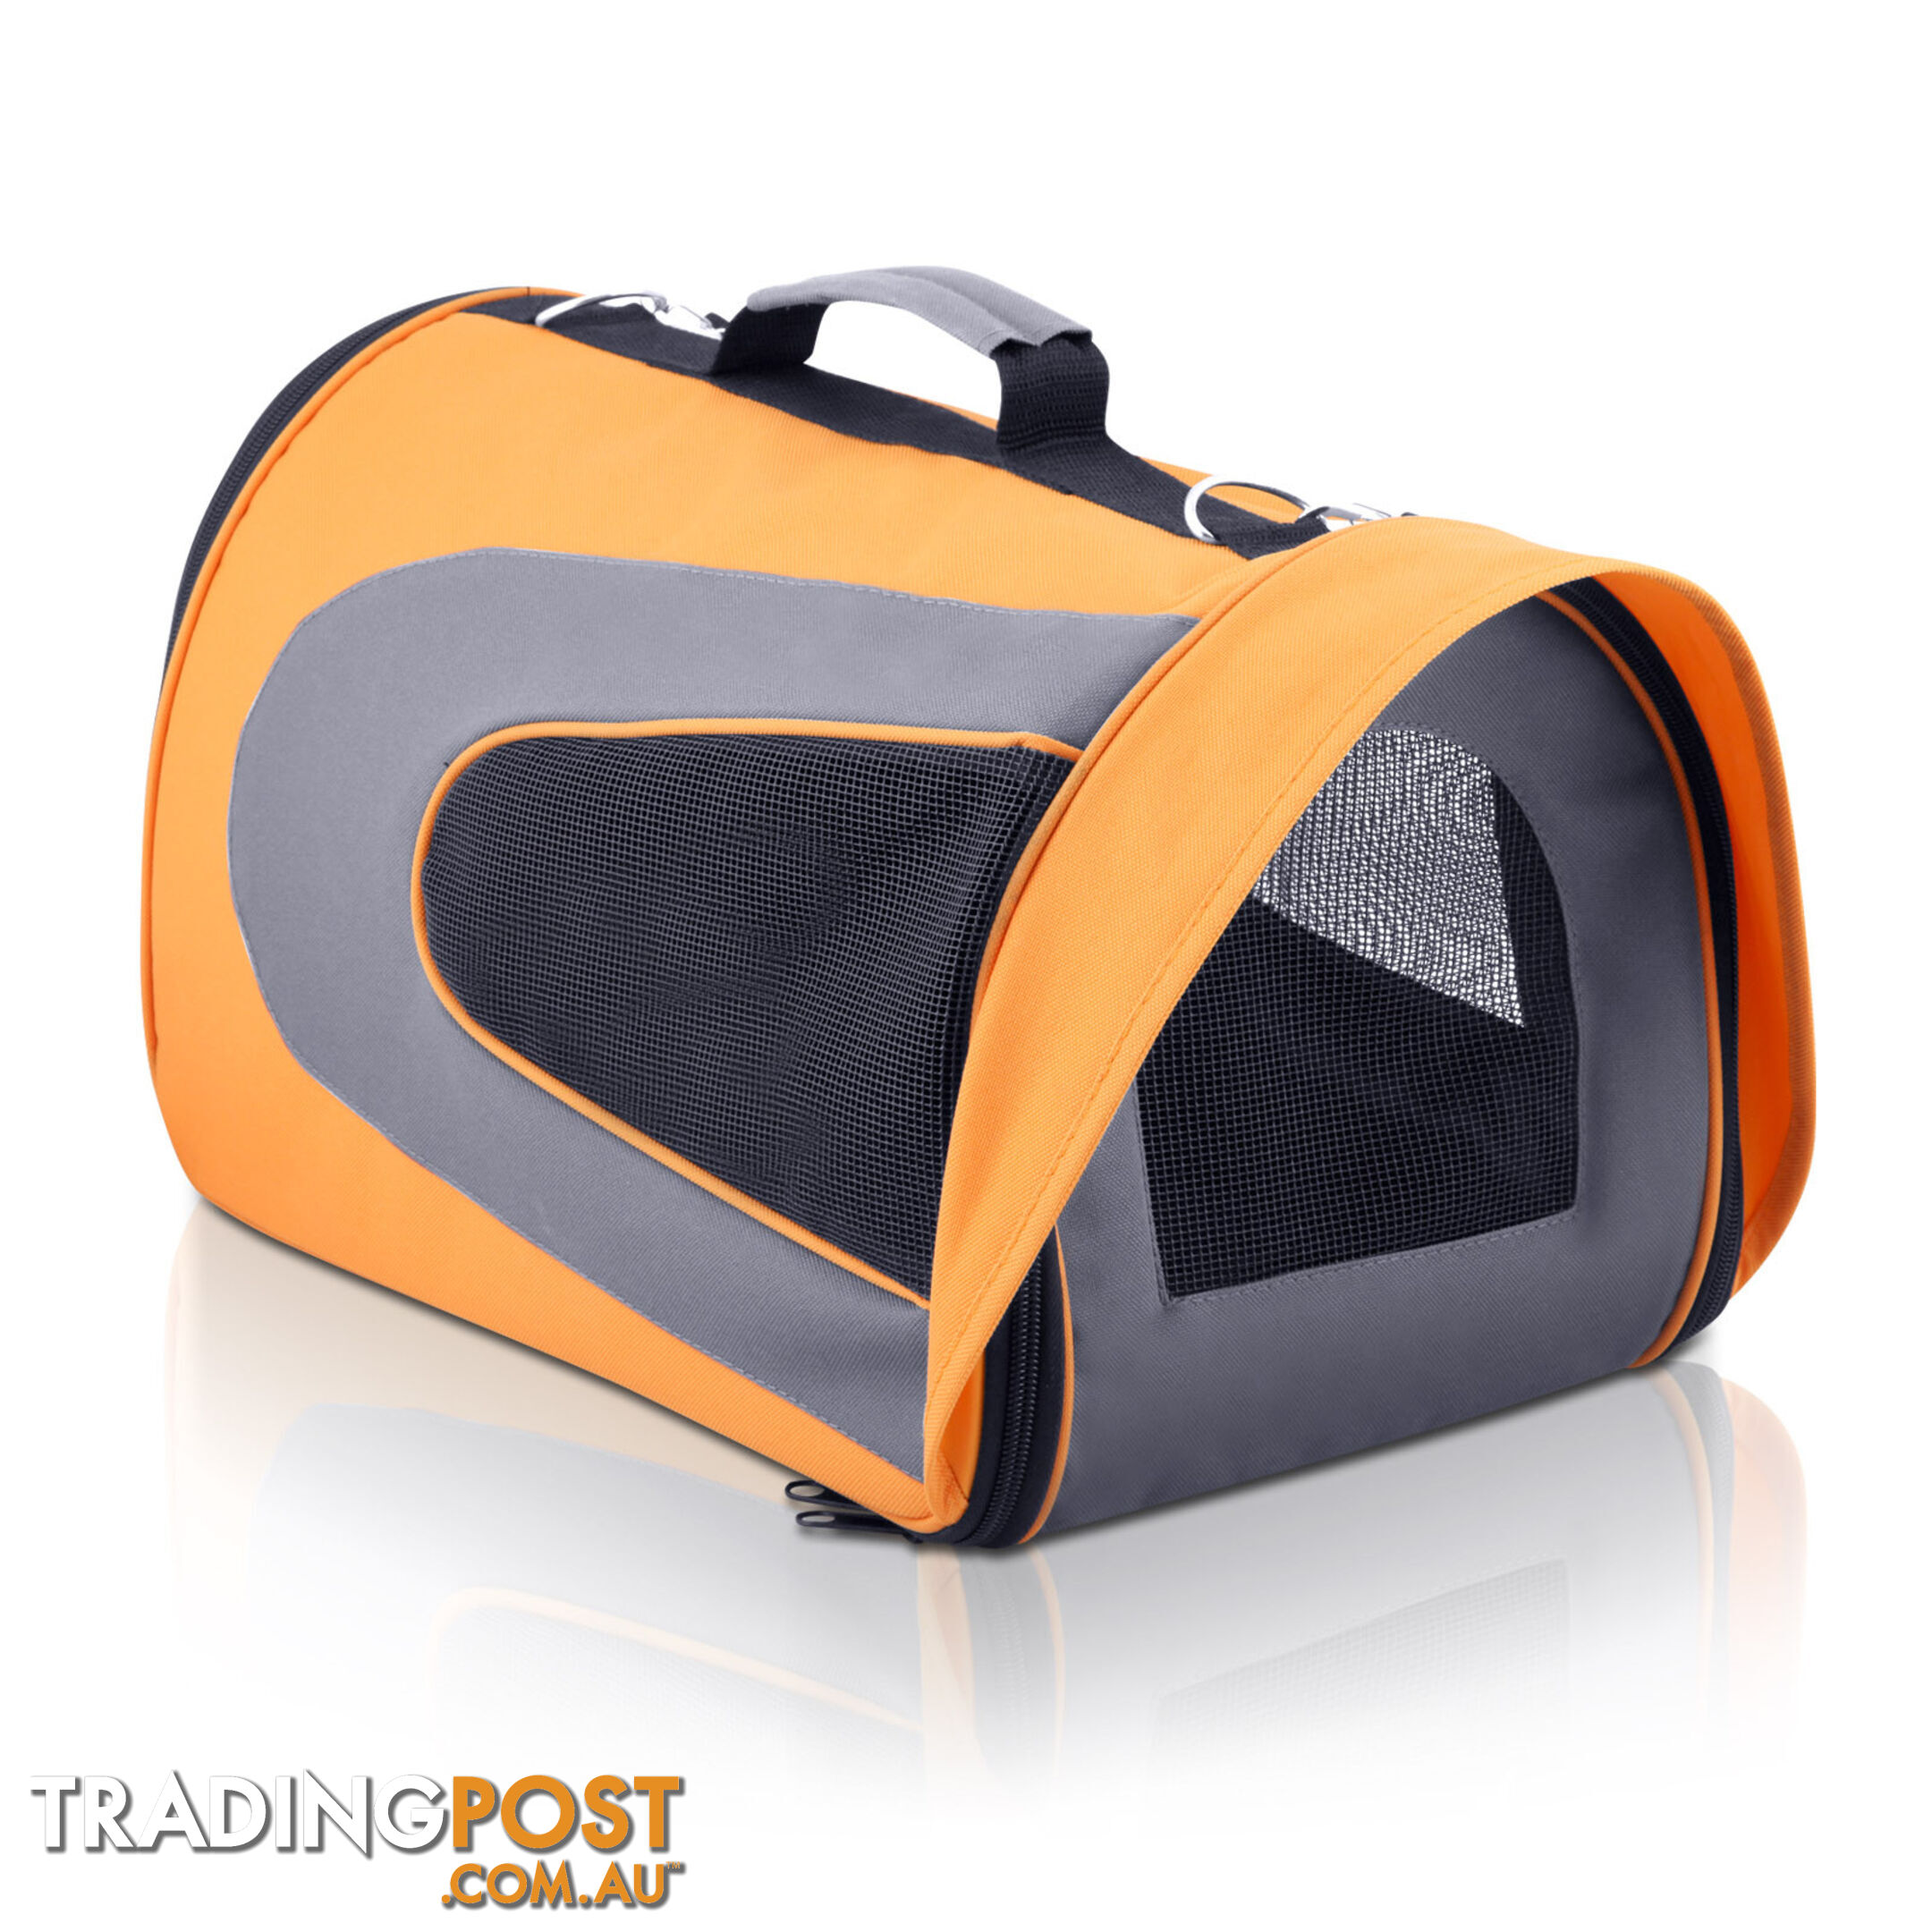 Pet Dog Cat Carrier Travel Bag Large Orange